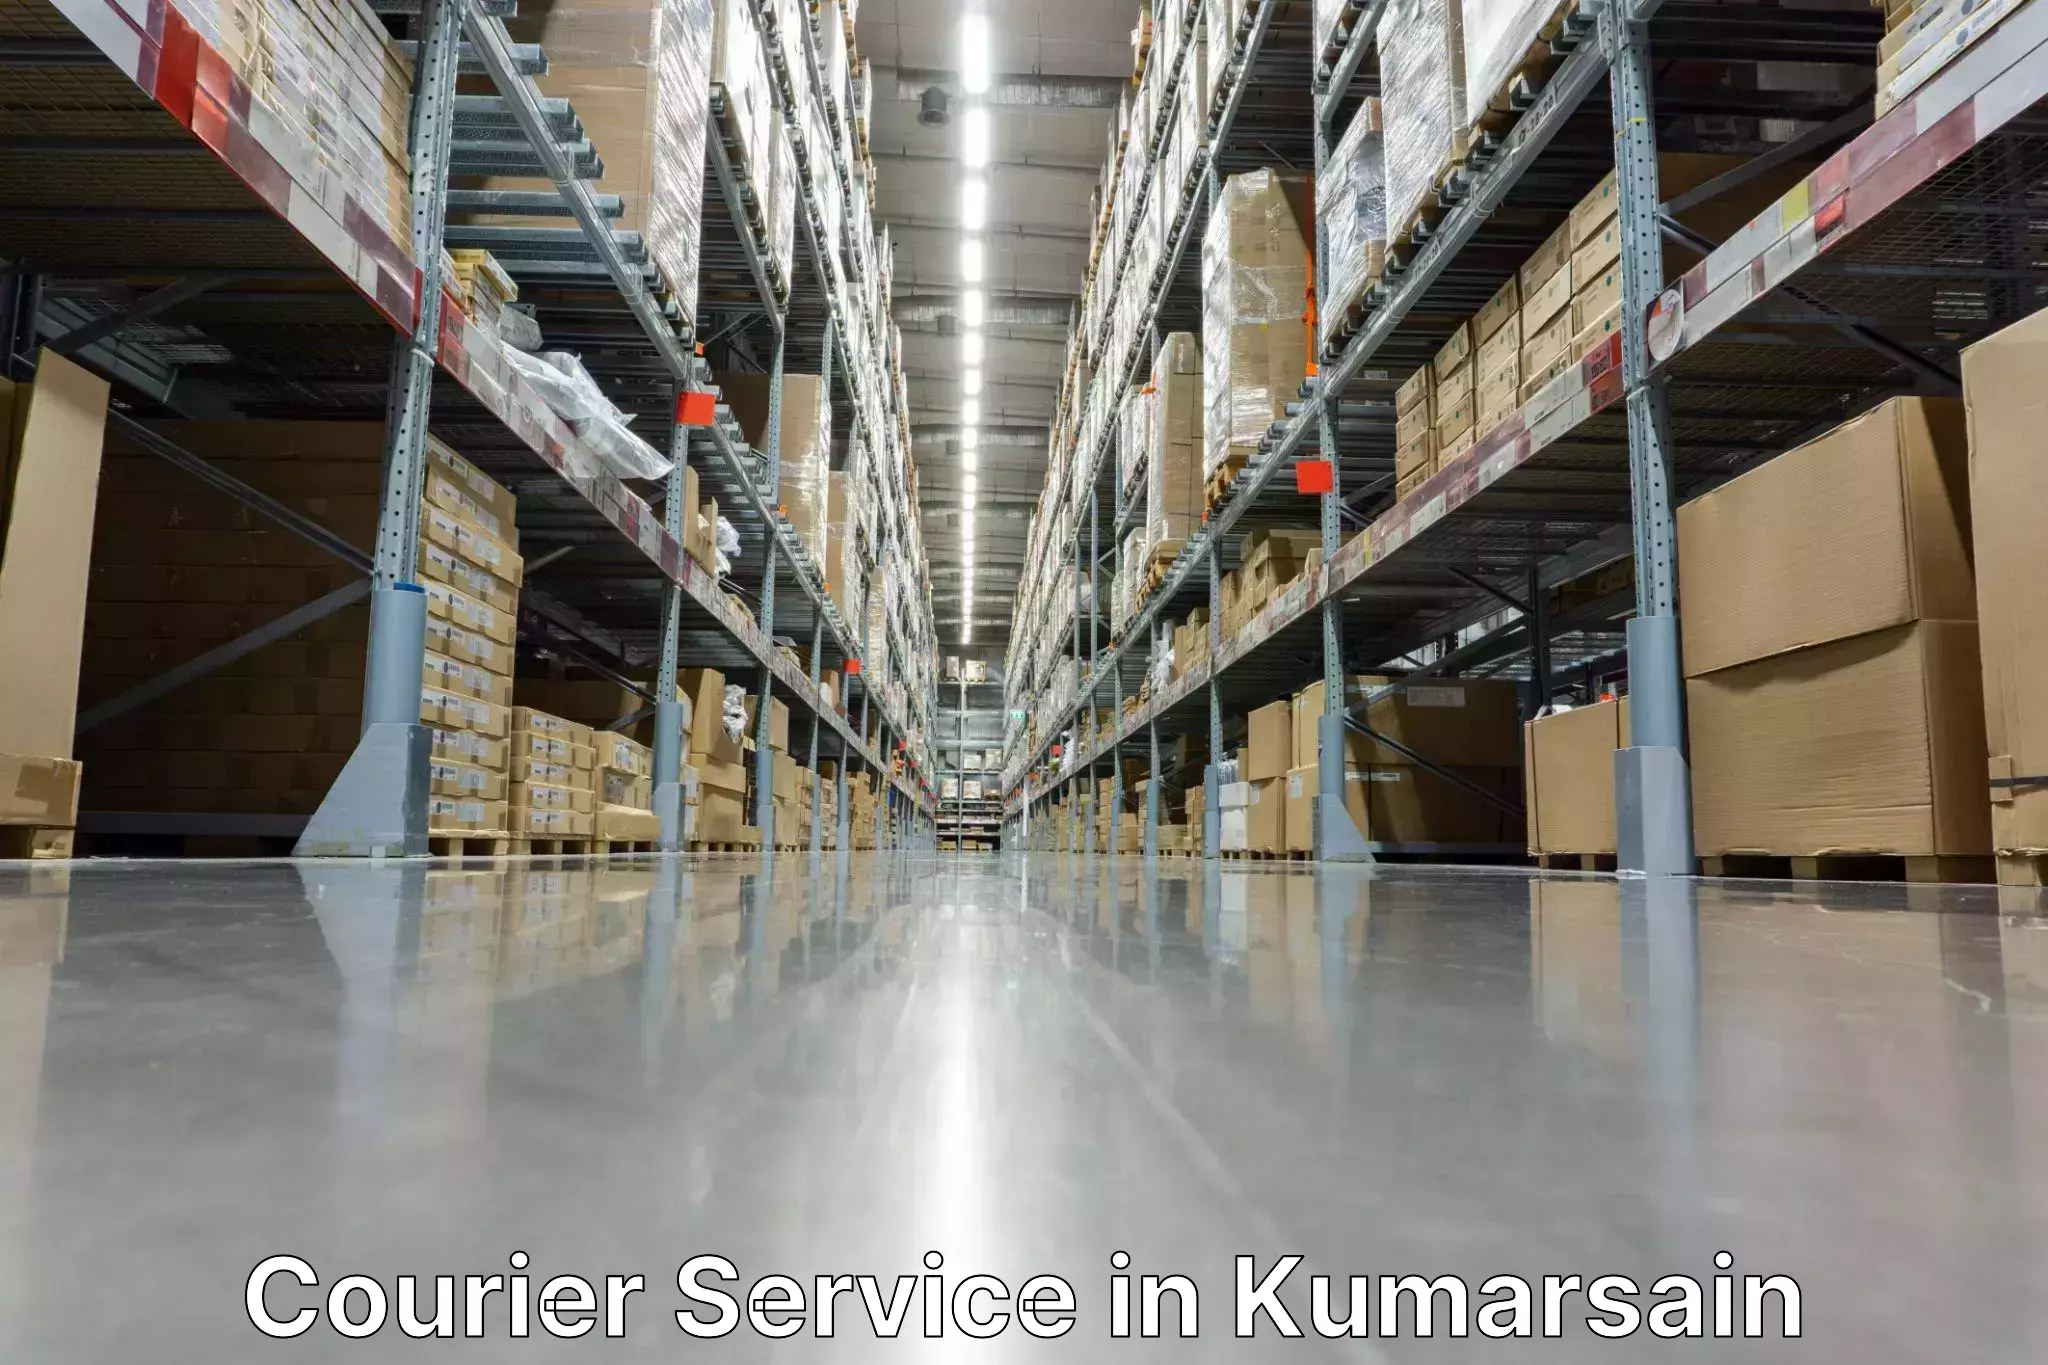 Customer-centric shipping in Kumarsain